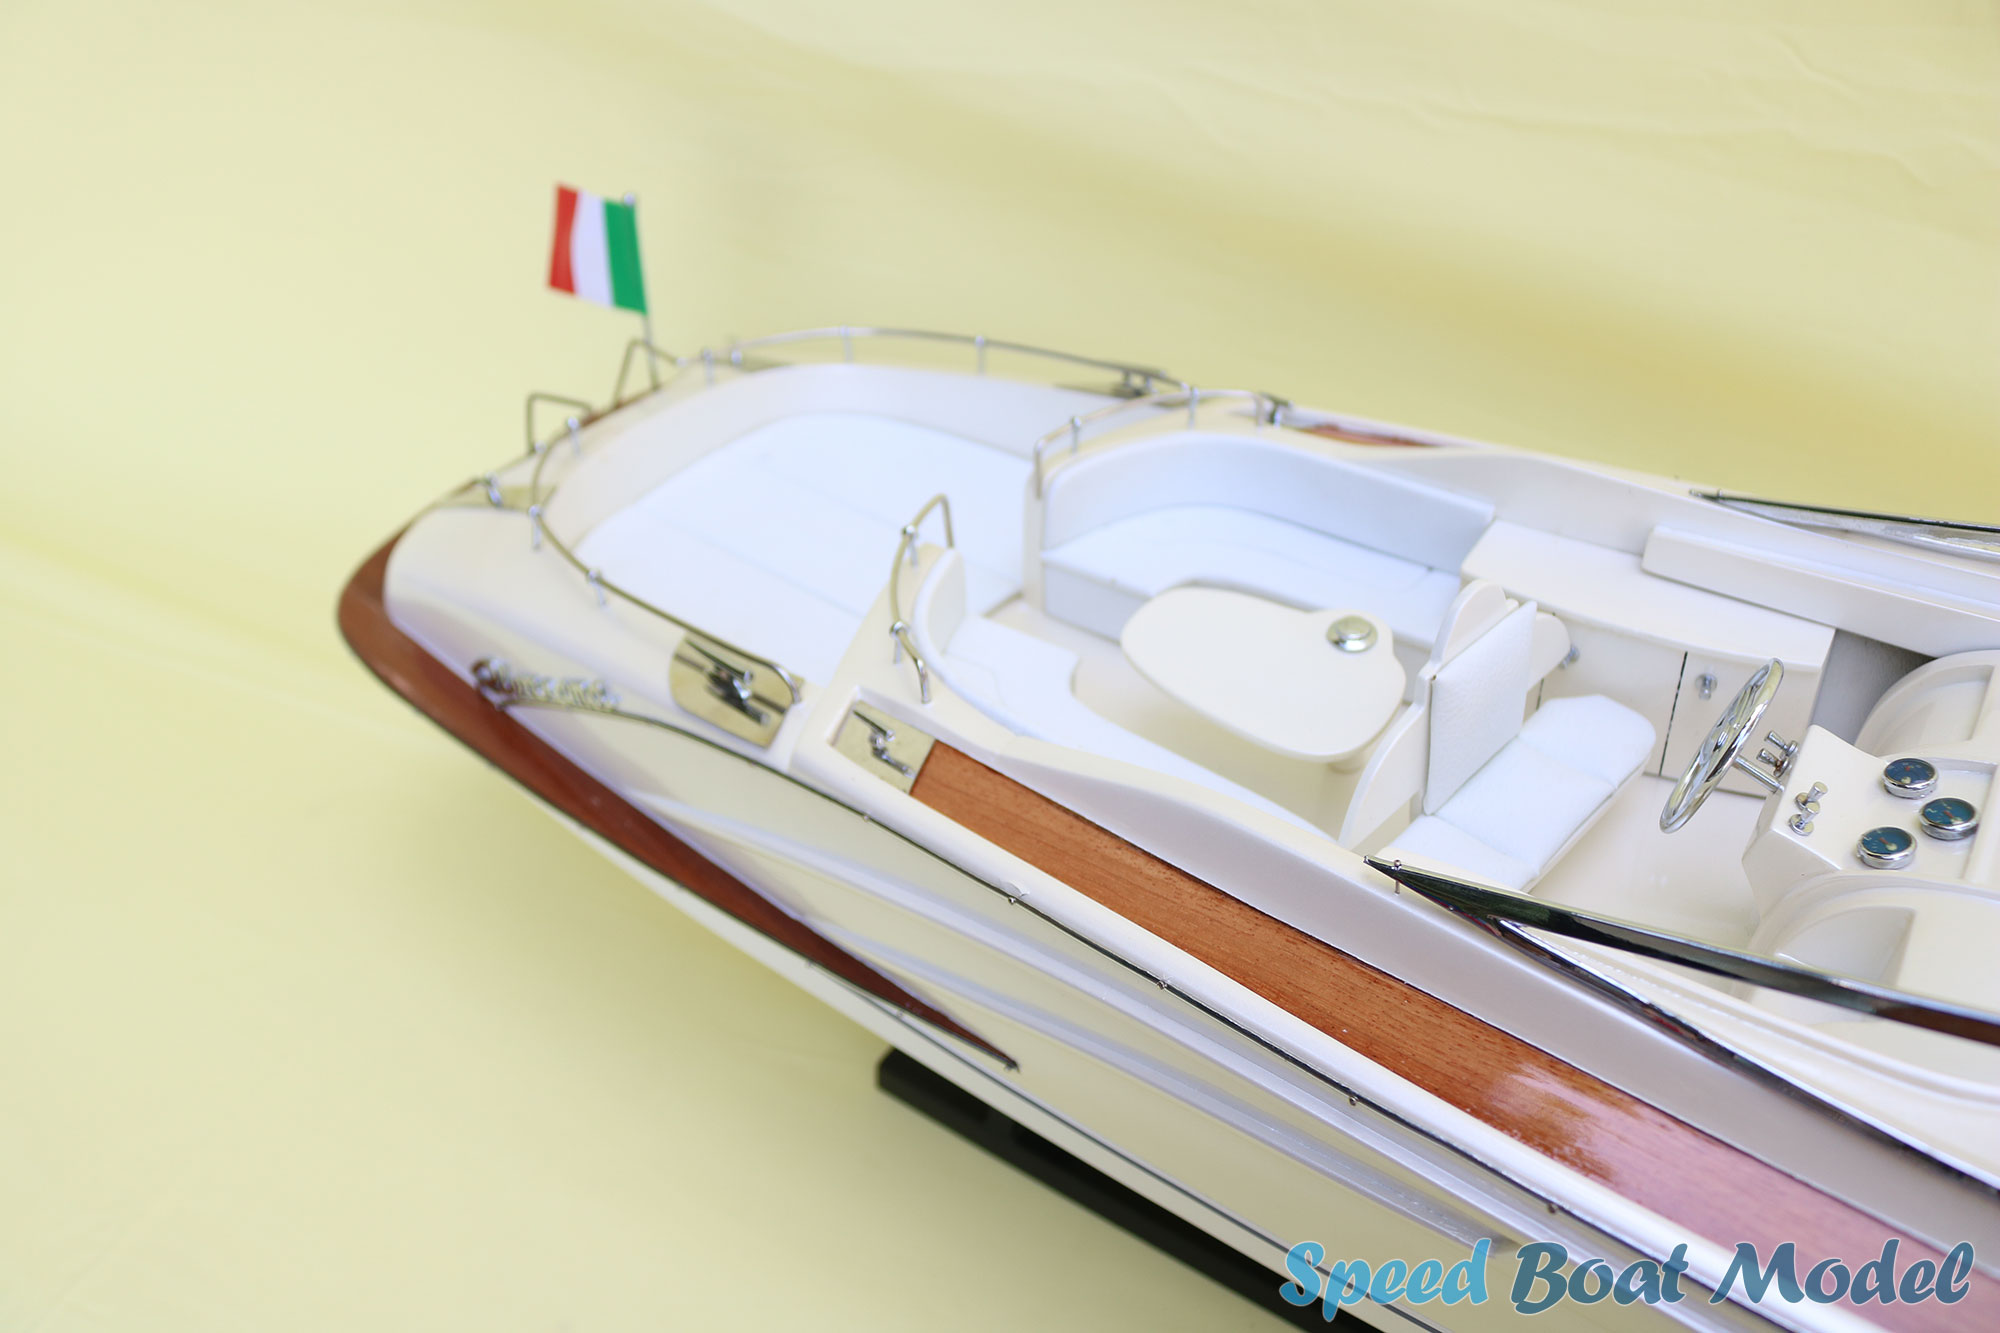 Riva Rivarama White Pearl Painted Speed Boat Model 35.4" - Rivarama 44